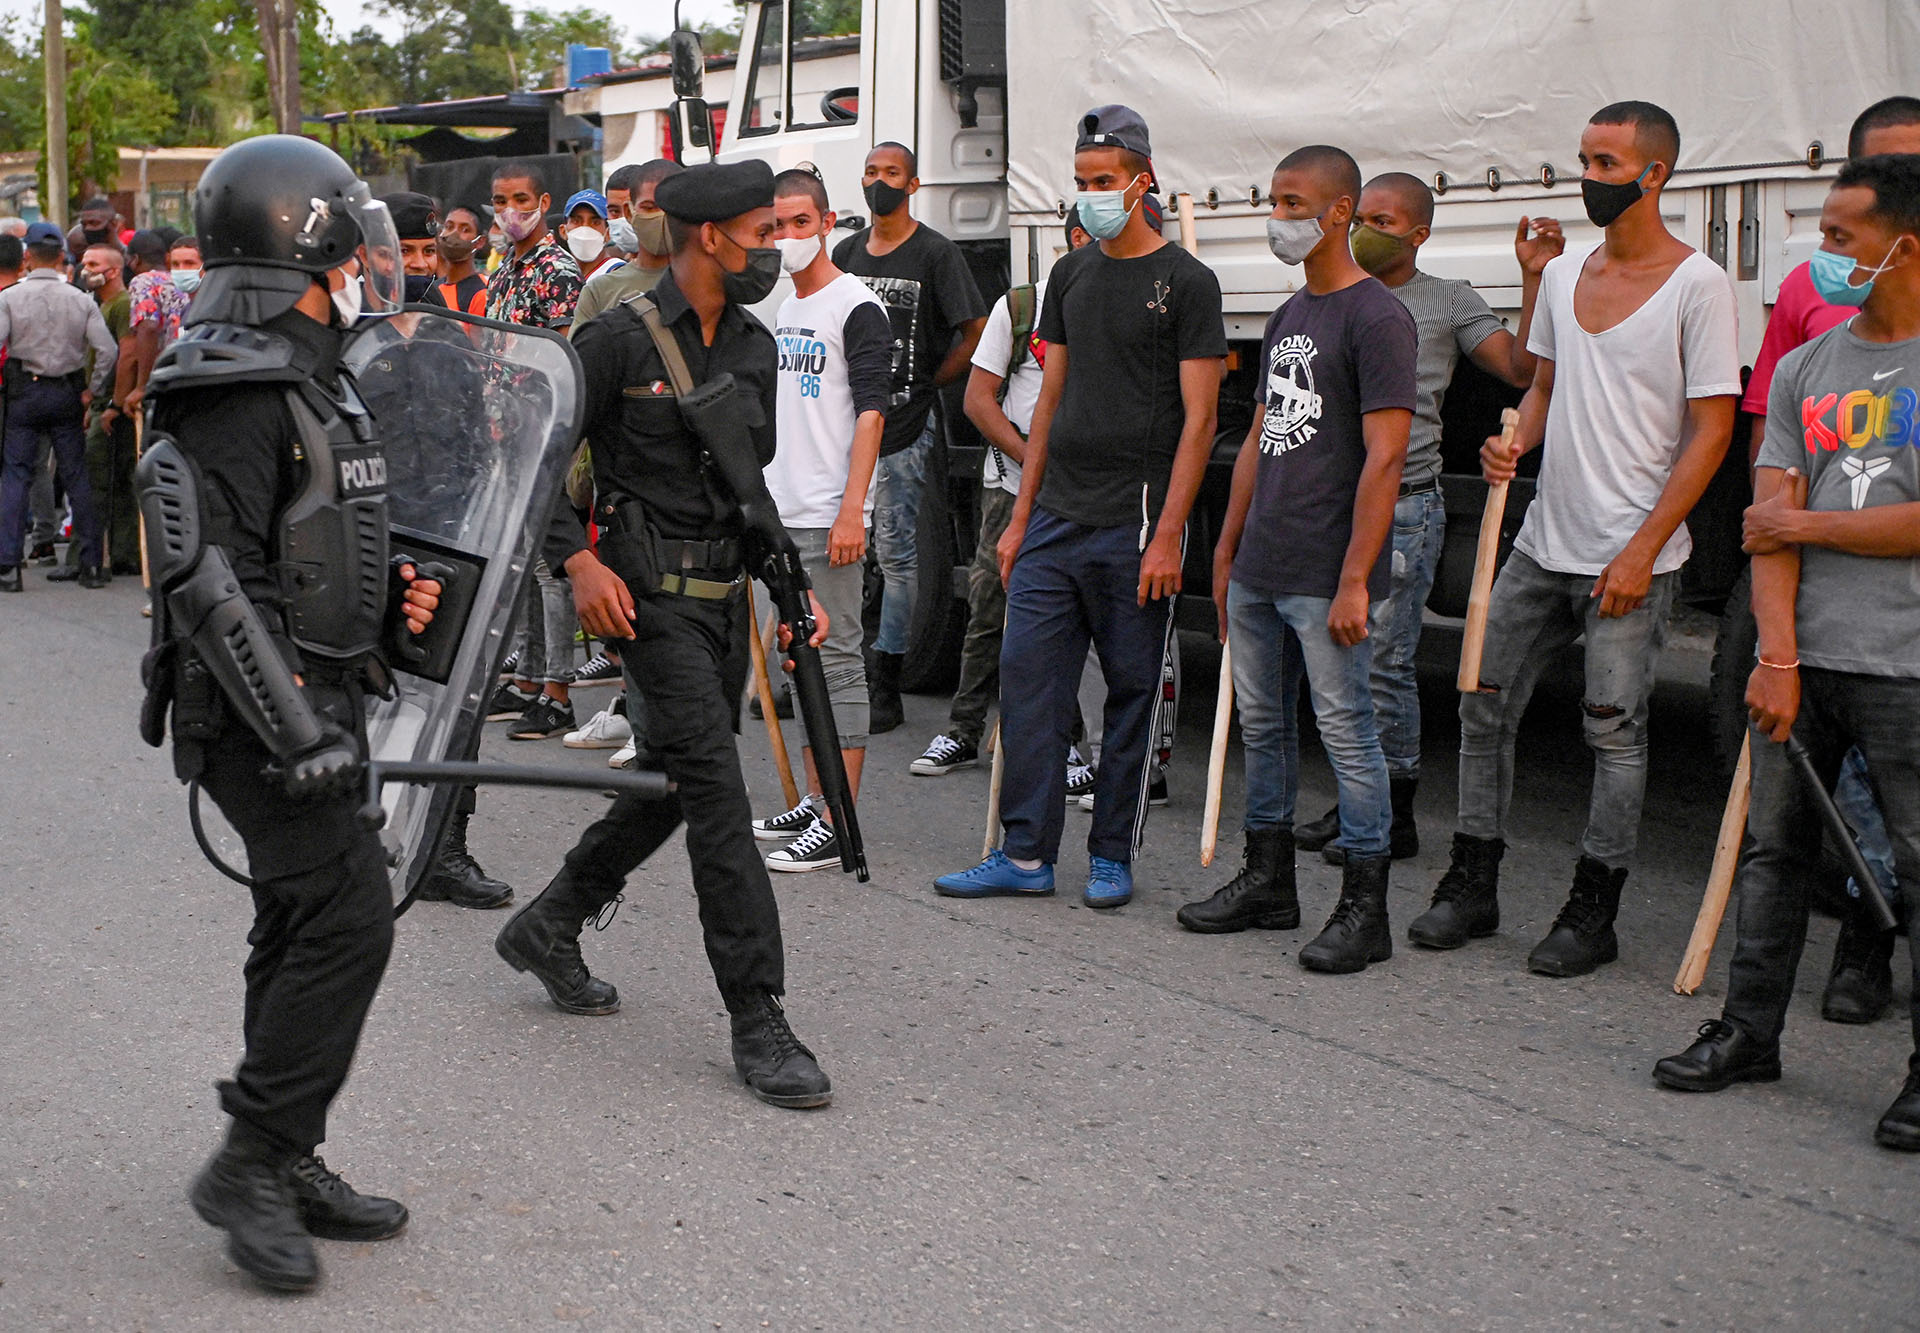 Jóvenes que apoyan al régimen castrista formados con palos frente a las fuerzas de seguridad en el municipio de Arroyo Naranjo, La Habana 